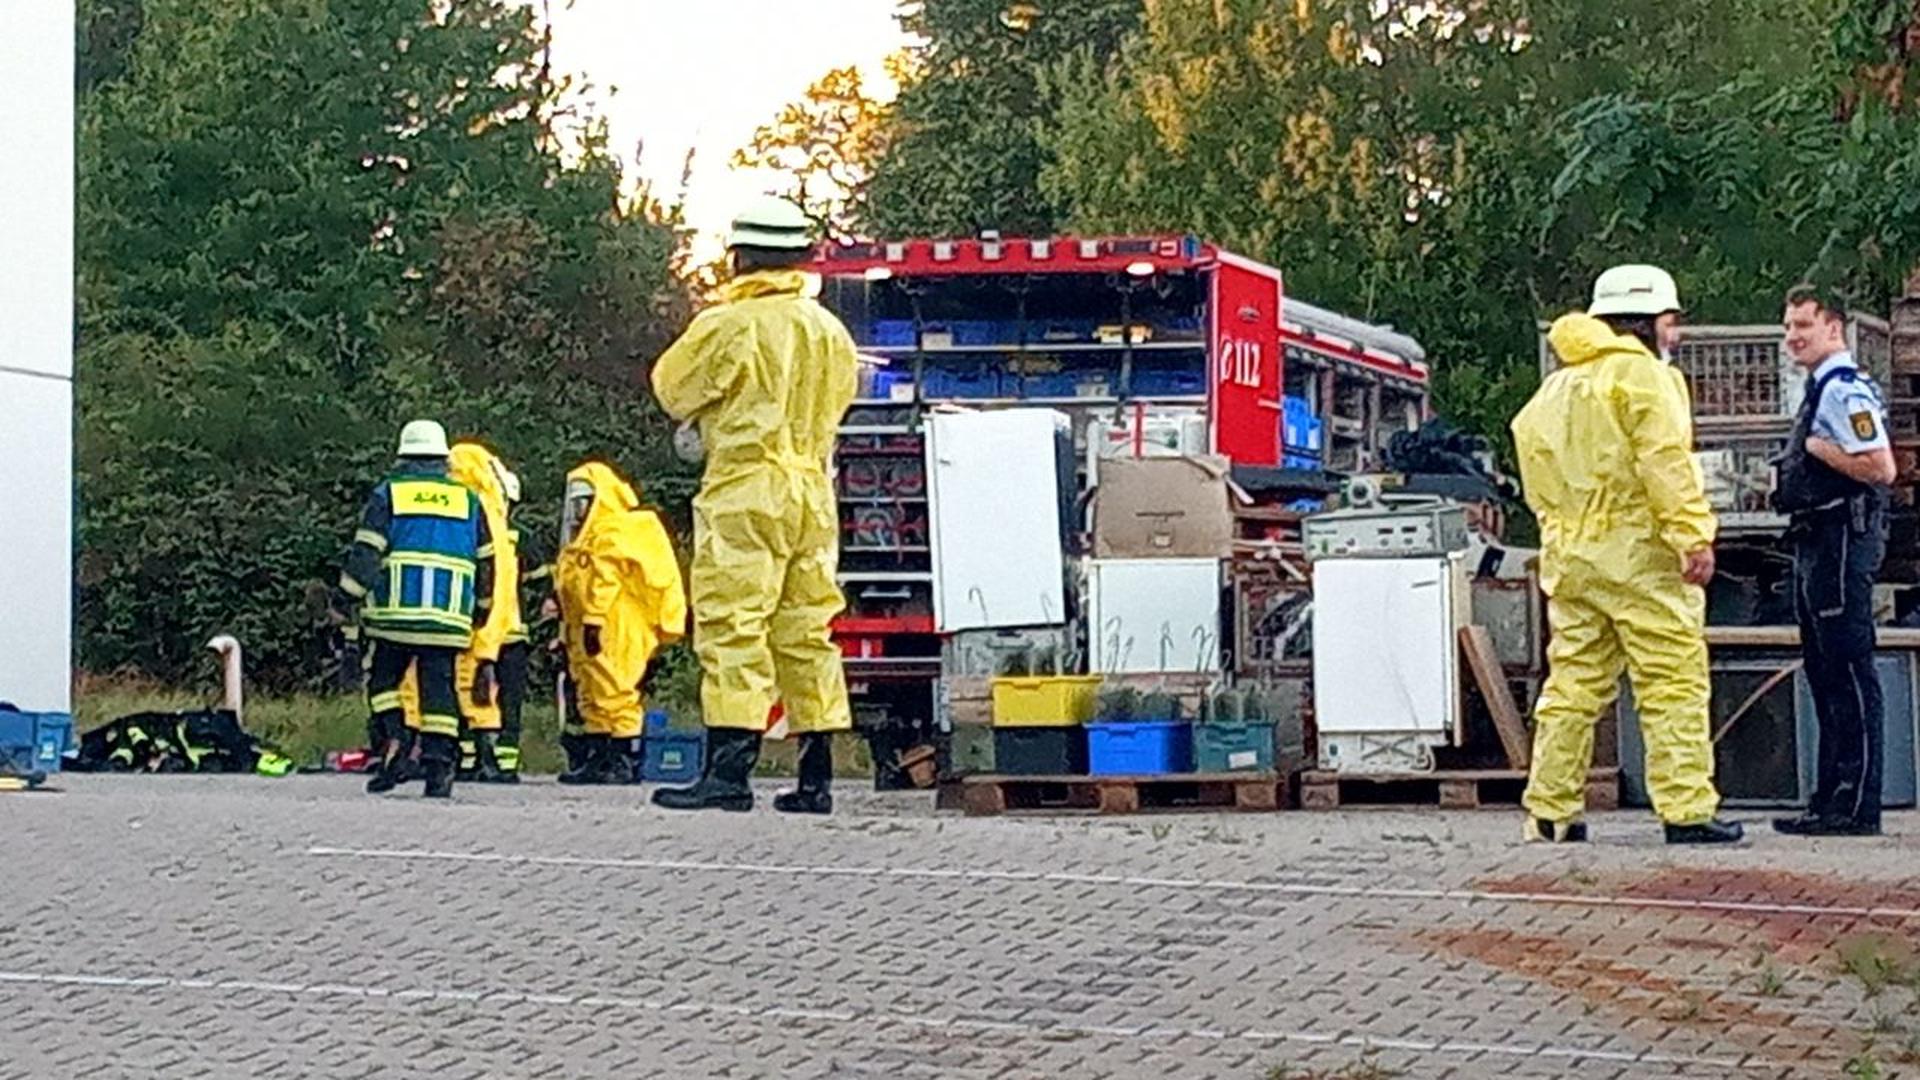 Ein Feuerwehrauto steht auf dem Betriebsgelände. Mehrere Feuerwehrleute in gelben Schutzanzügen sind vor Ort.